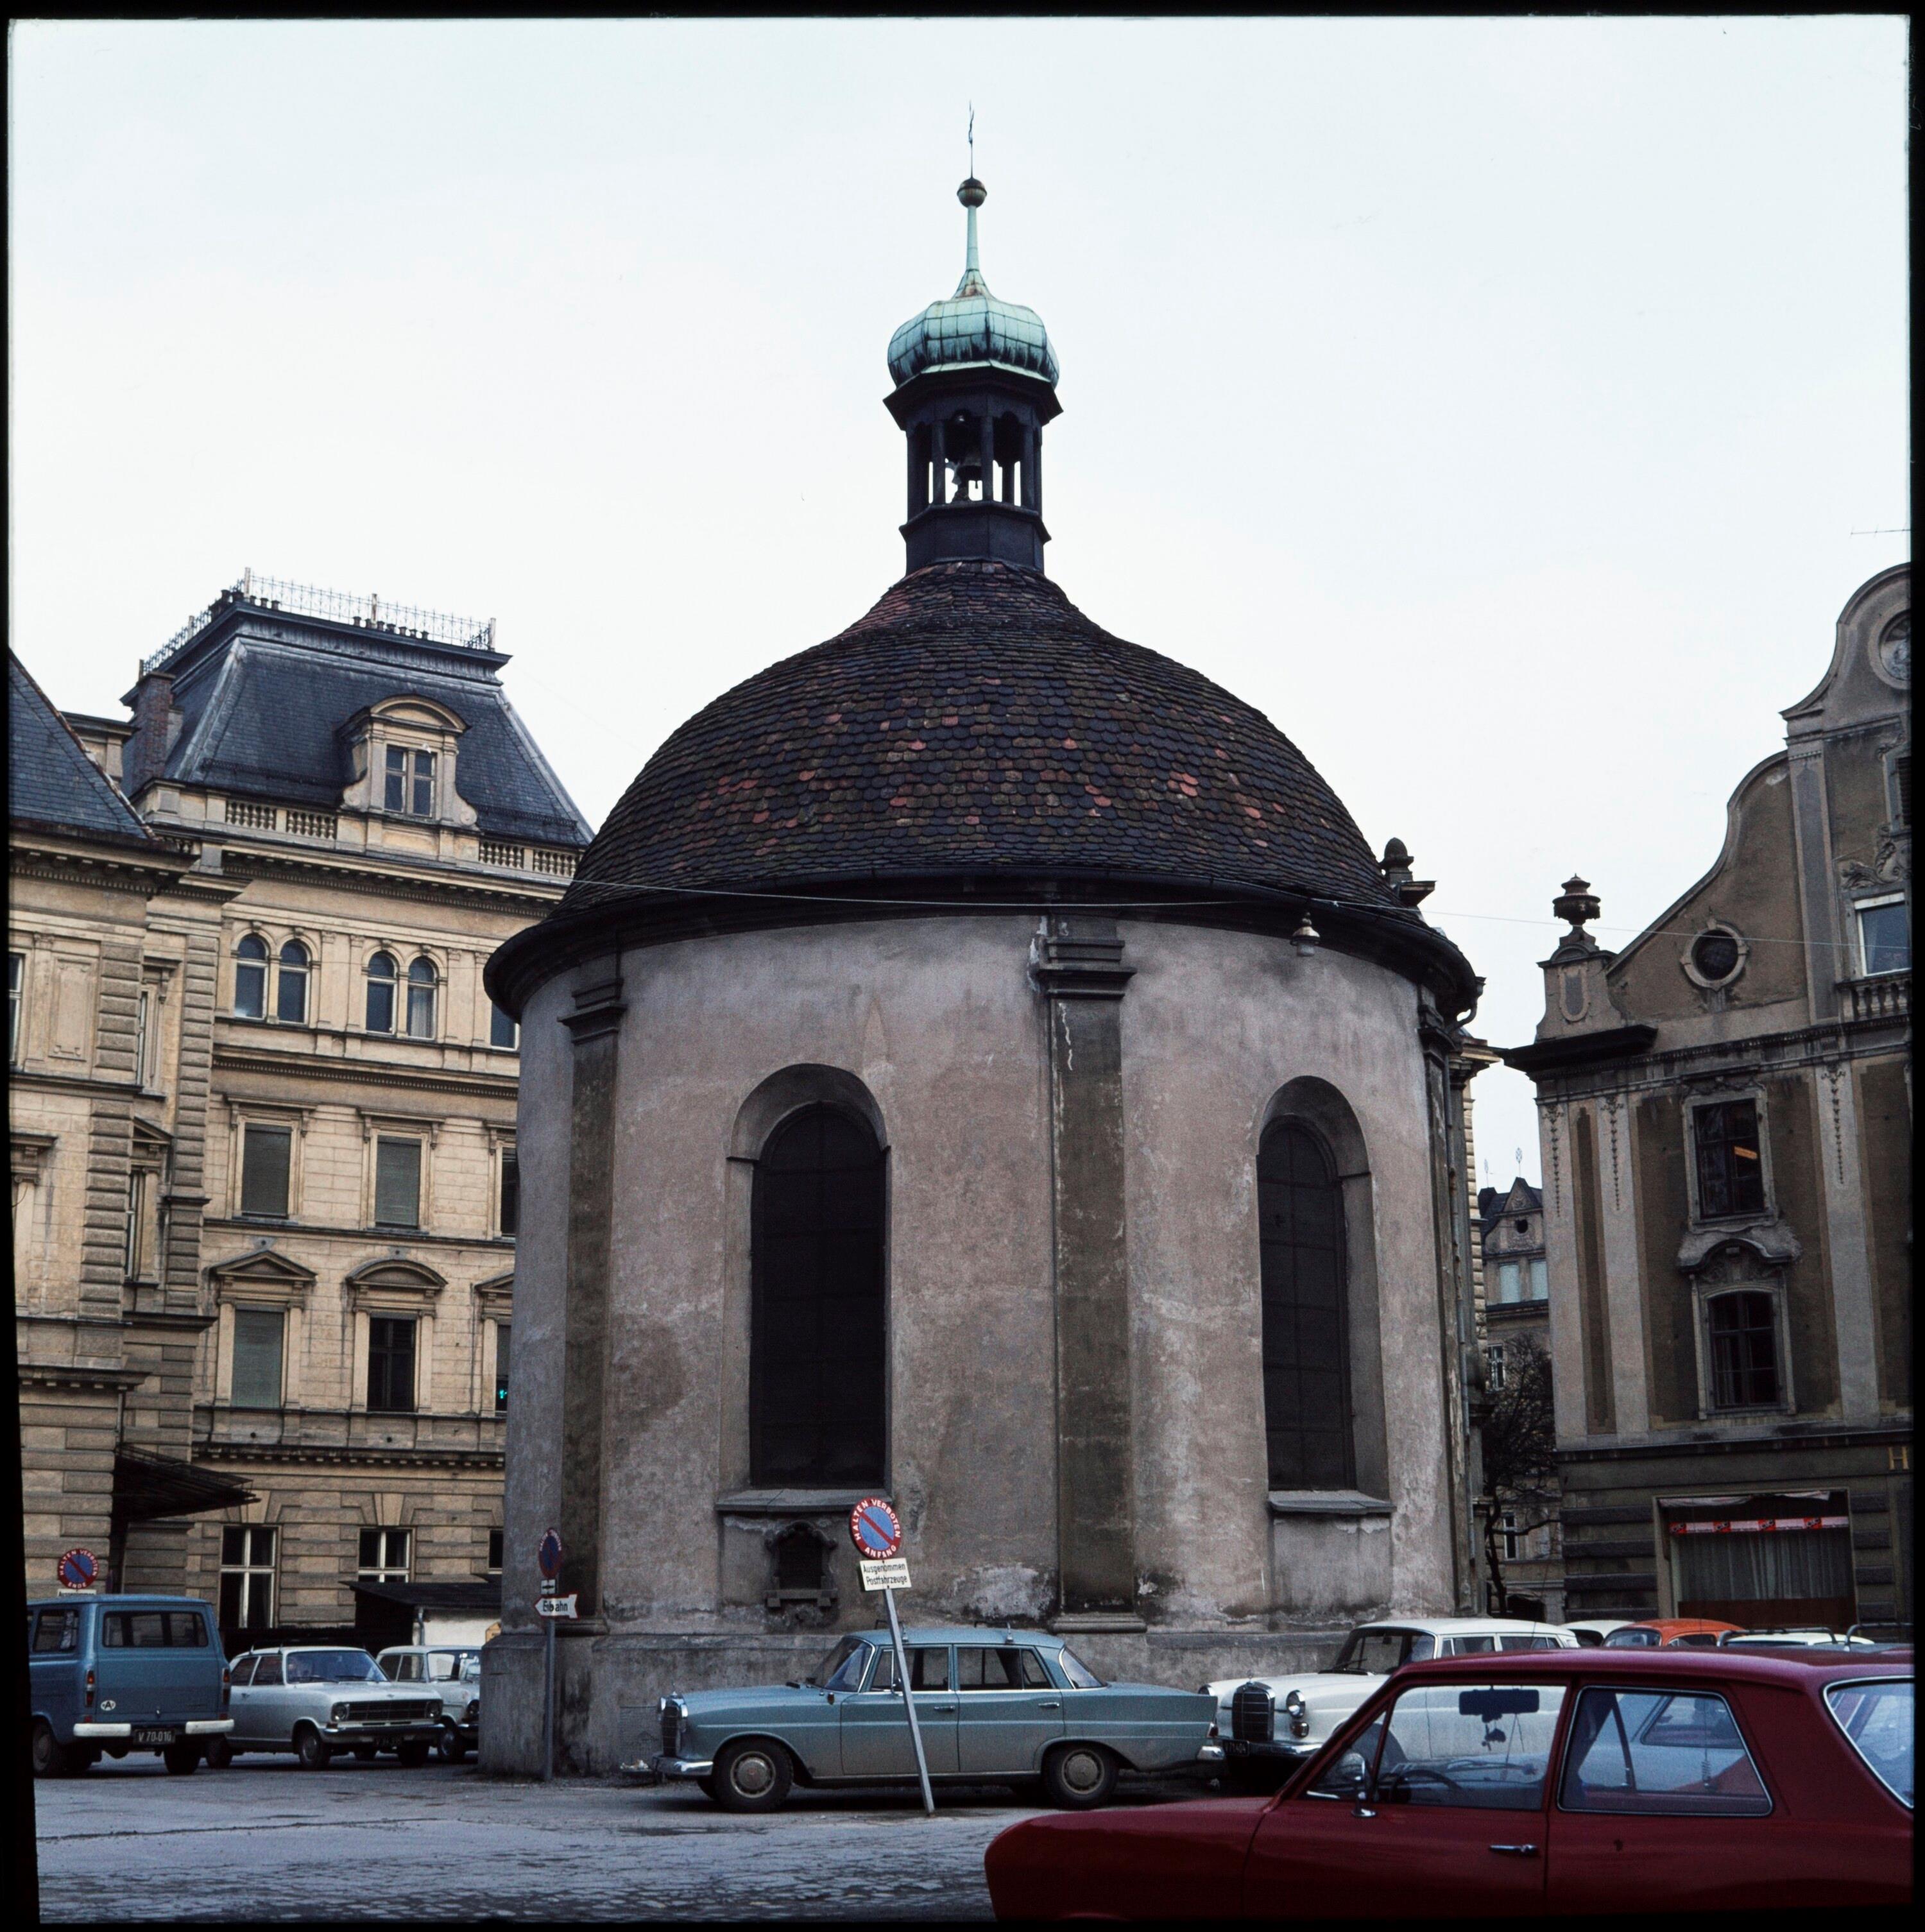 Nepomukkapelle in Bregenz></div>


    <hr>
    <div class=